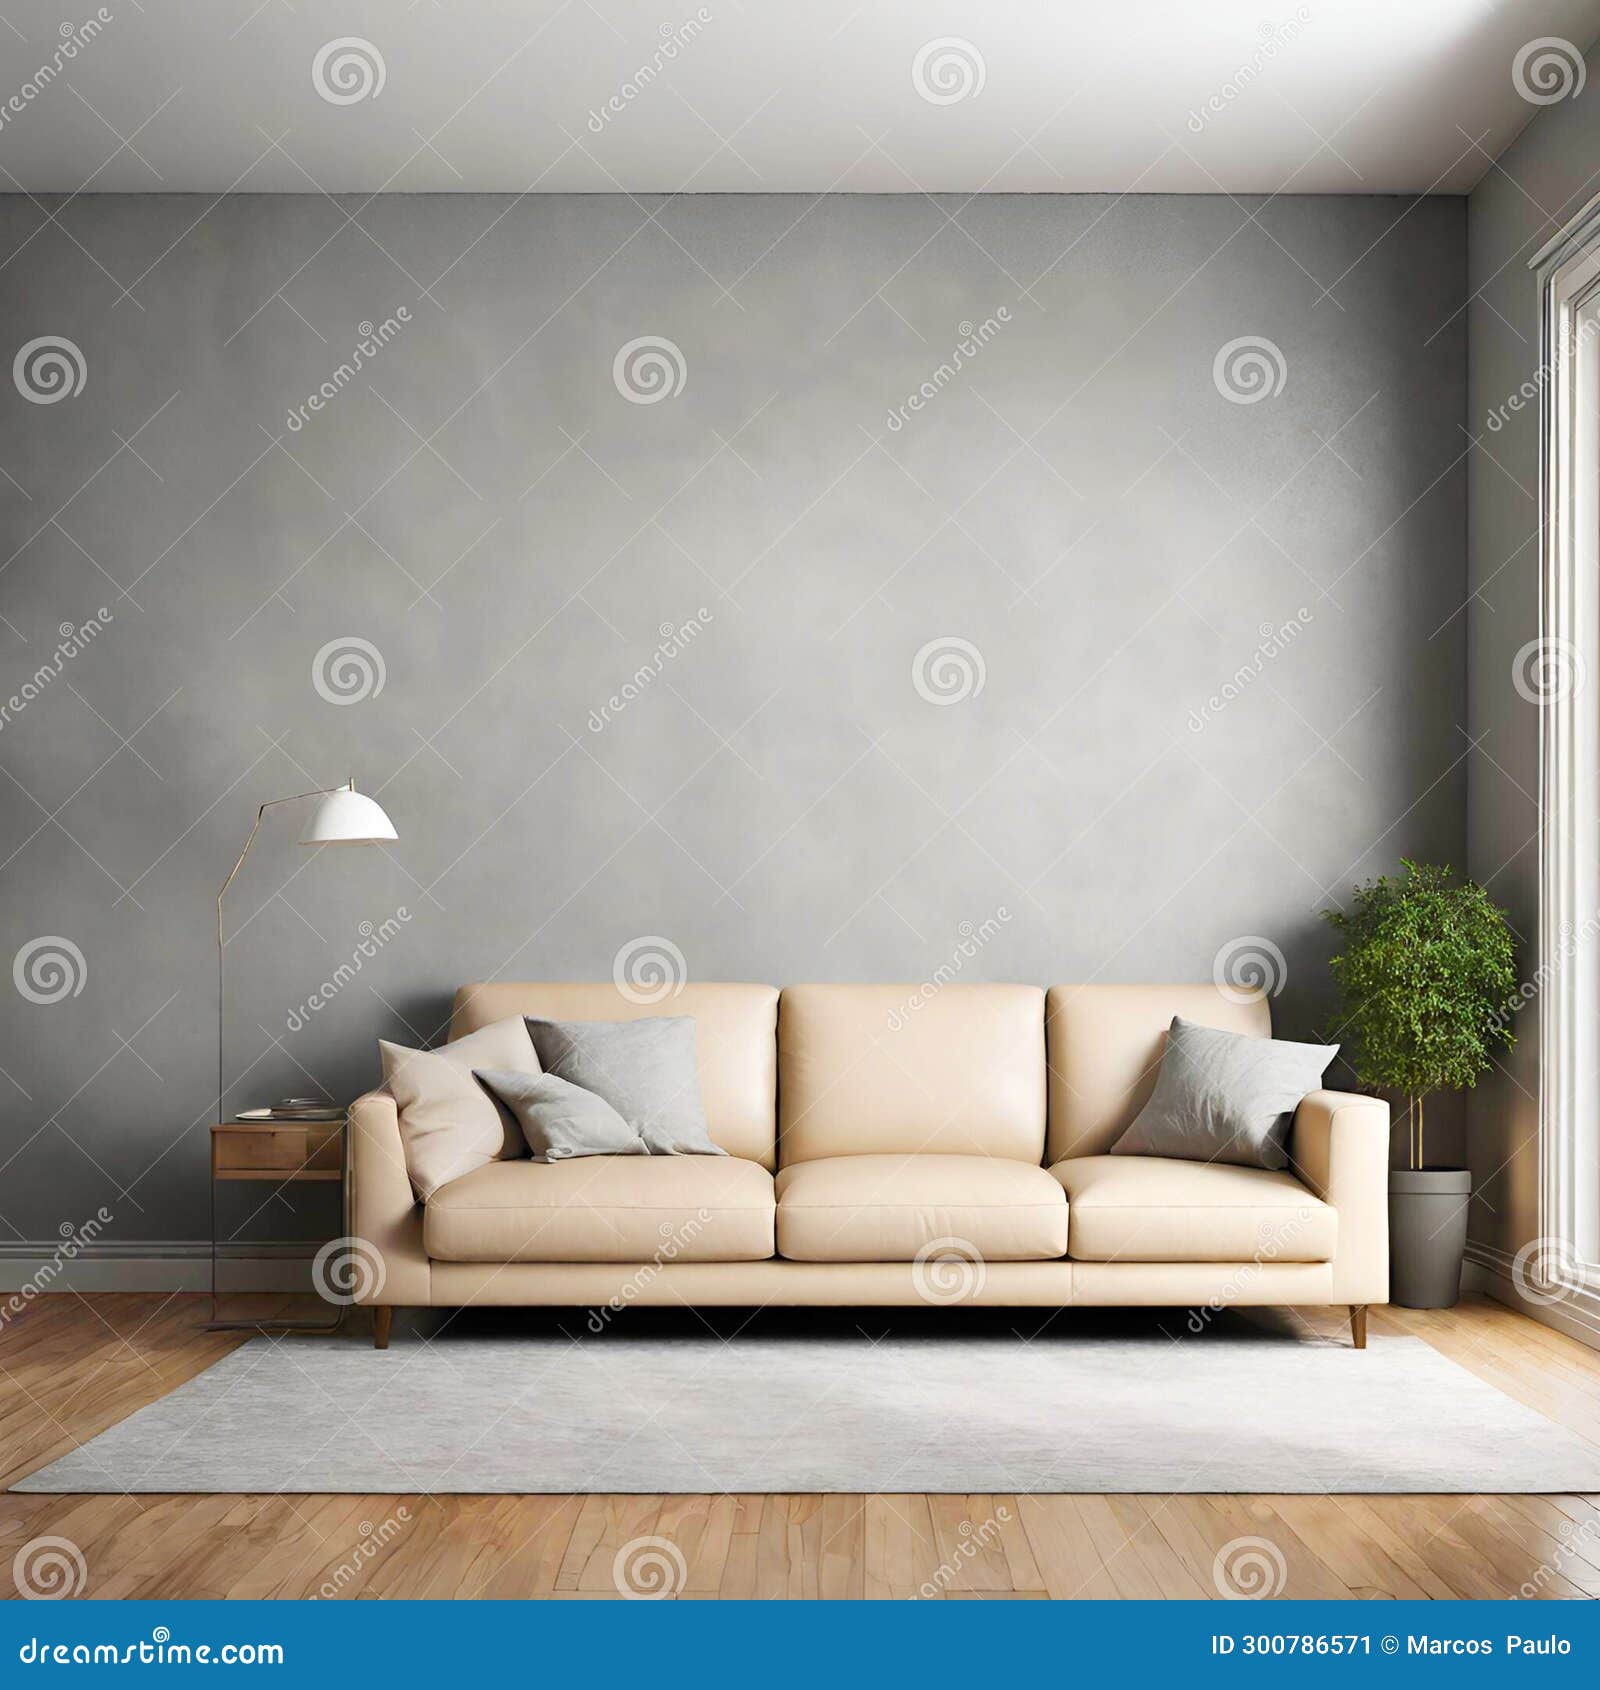 sala com sofÃ¡ e parede vazia com luz natural com um vaso de planta no chÃ£o